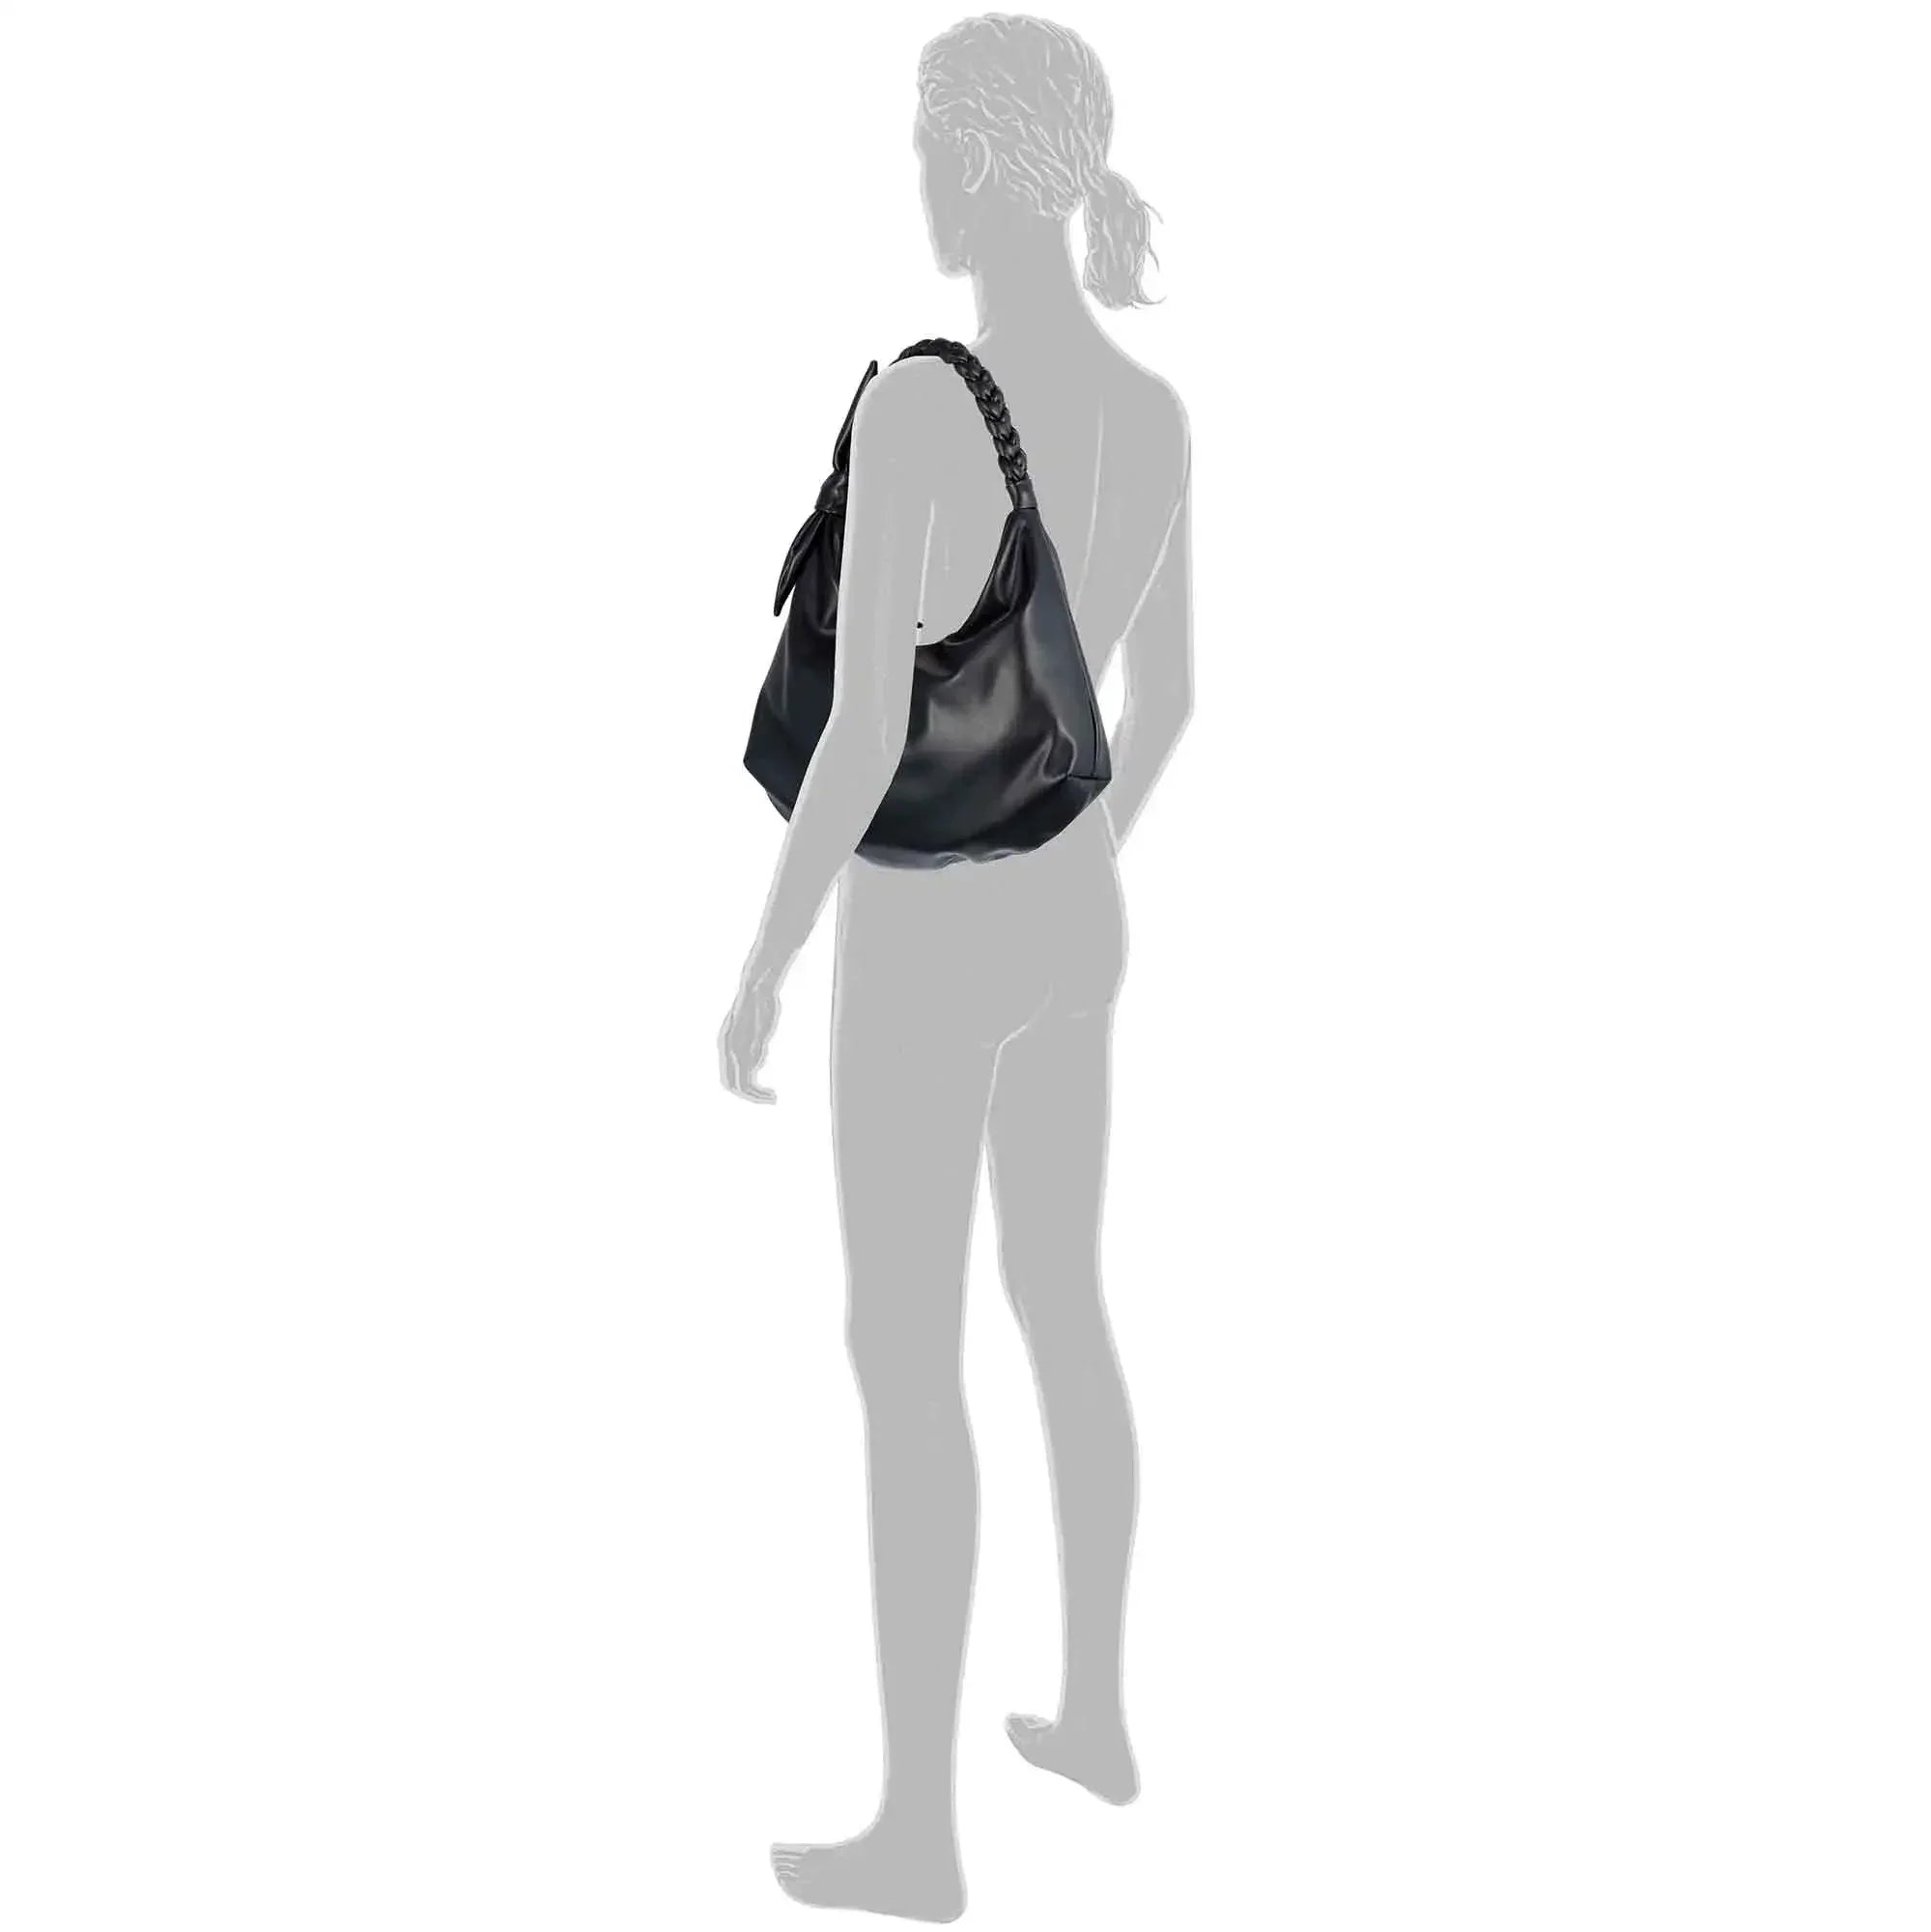 Tom Tailor Denim Rica shoulder bag 35 cm - black